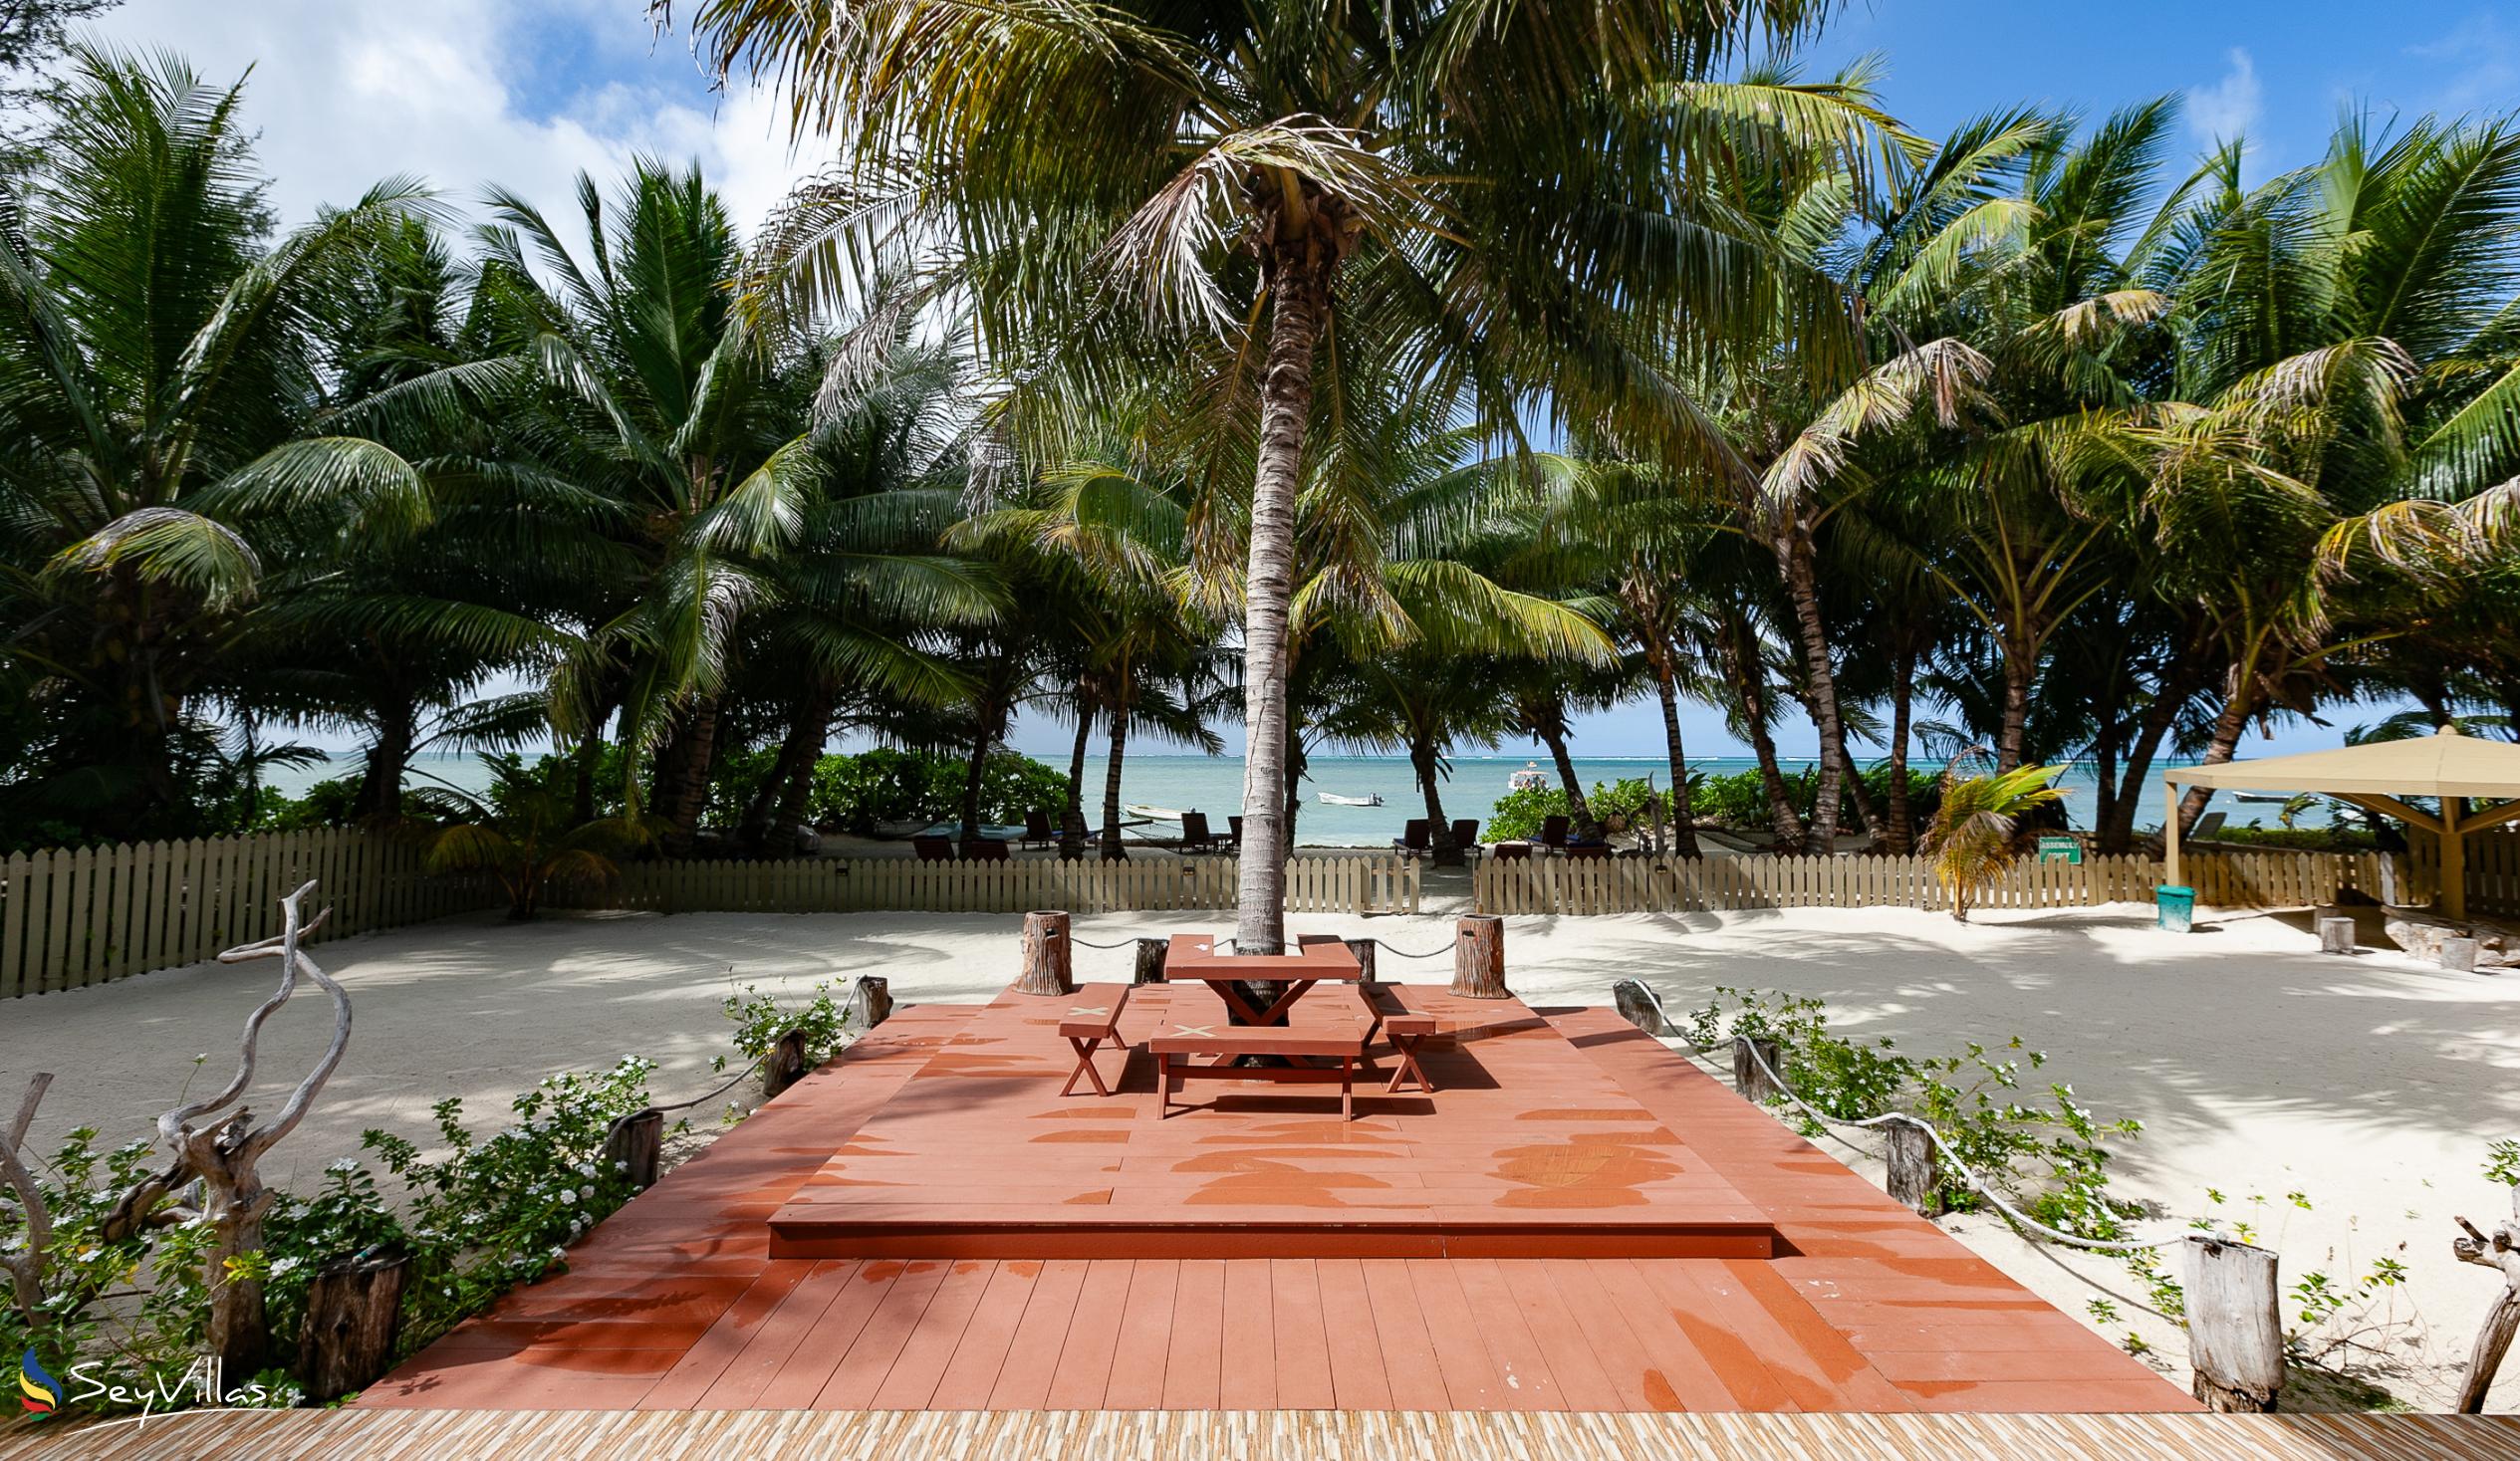 Foto 9: Seashell Beach Villa - Aussenbereich - Praslin (Seychellen)